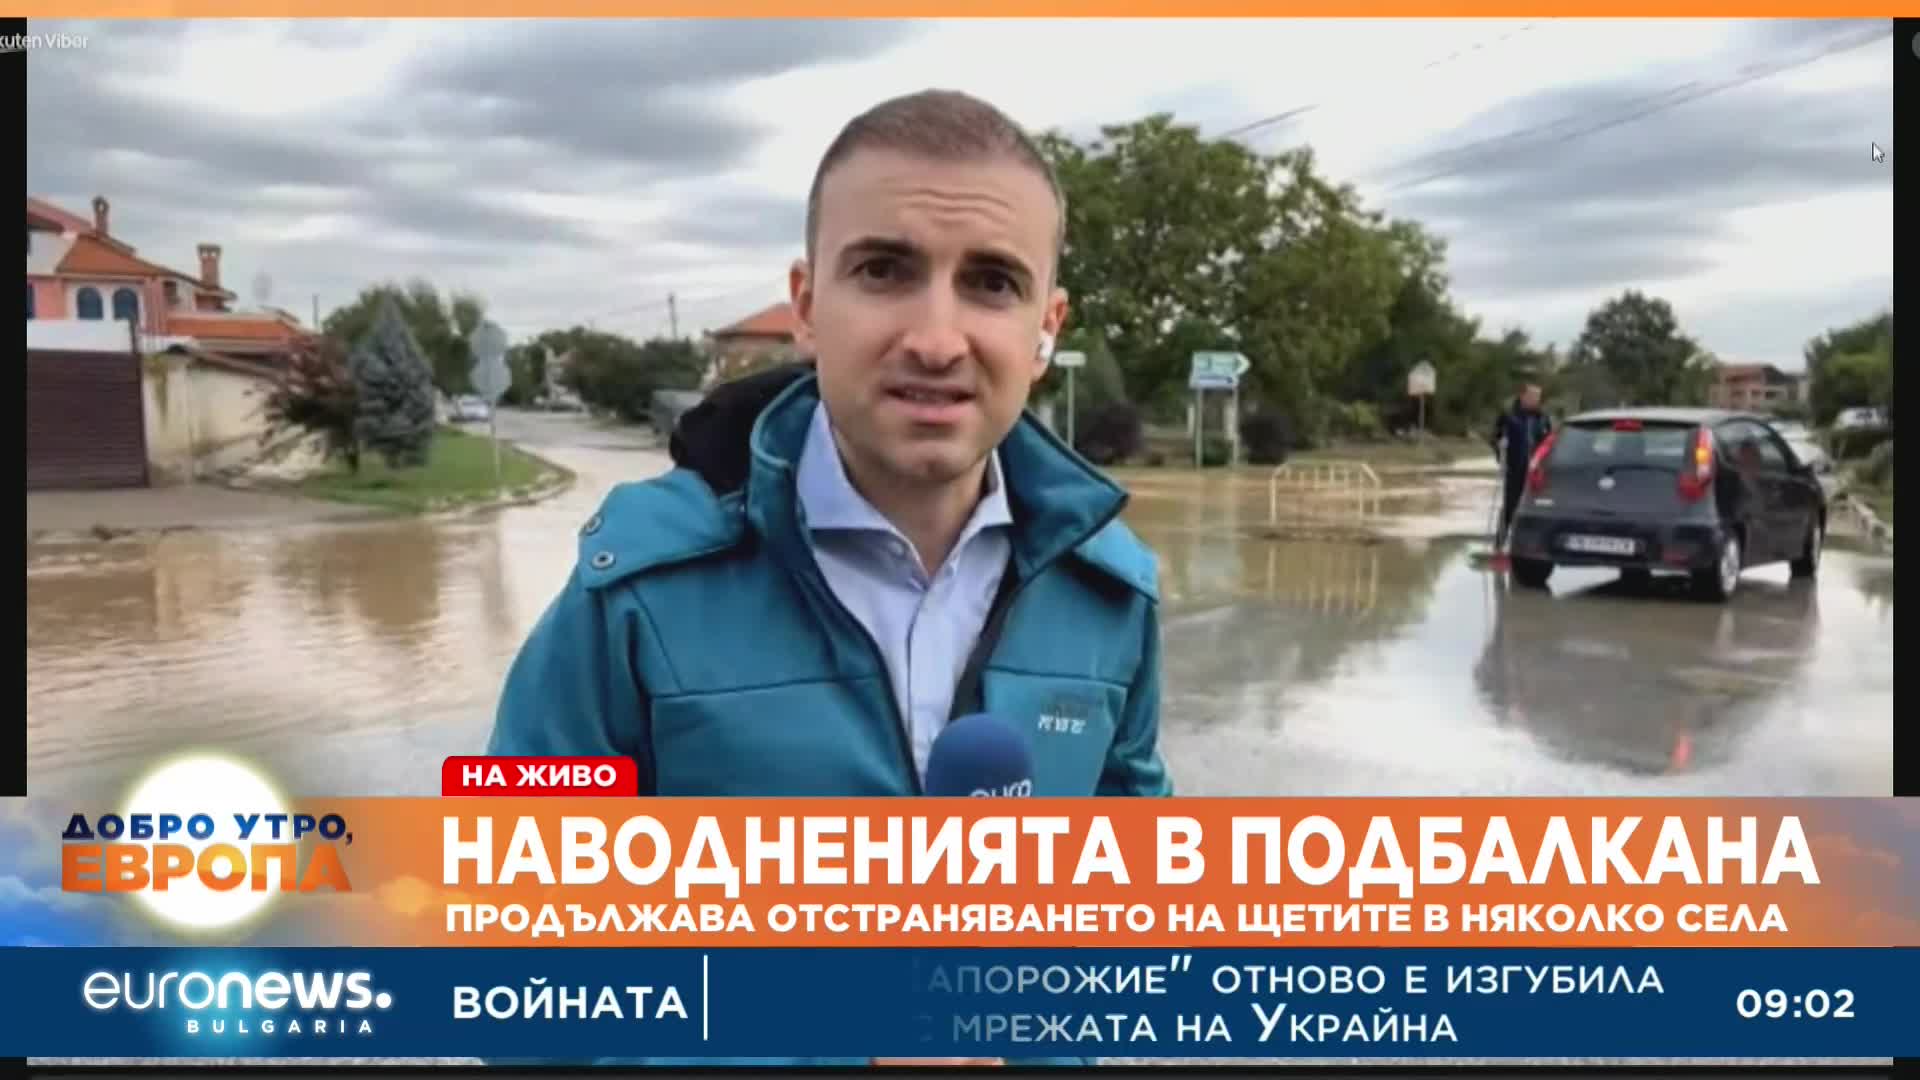 Десетки наводнени къщи в Карловско все още са откъснати от света